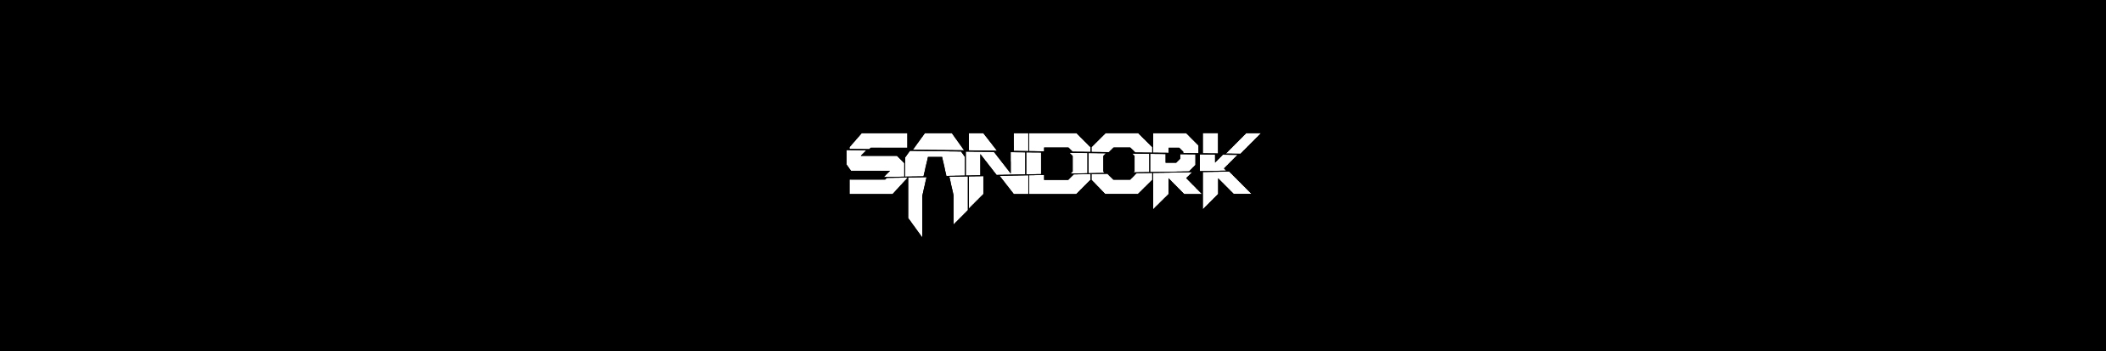 Sandork_music